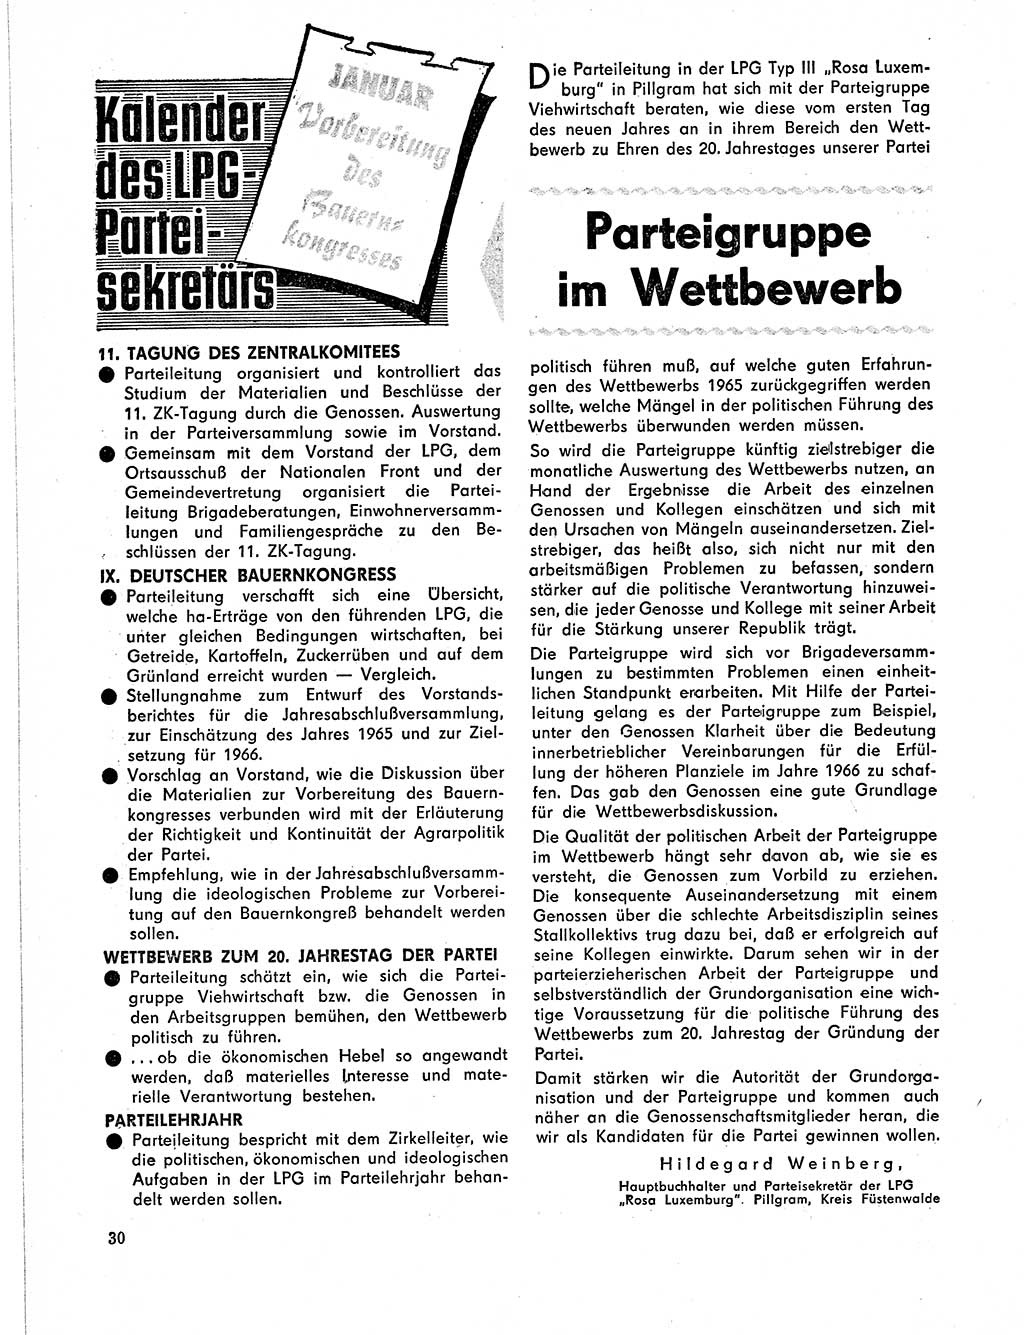 Neuer Weg (NW), Organ des Zentralkomitees (ZK) der SED (Sozialistische Einheitspartei Deutschlands) für Fragen des Parteilebens, 21. Jahrgang [Deutsche Demokratische Republik (DDR)] 1966, Seite 30 (NW ZK SED DDR 1966, S. 30)